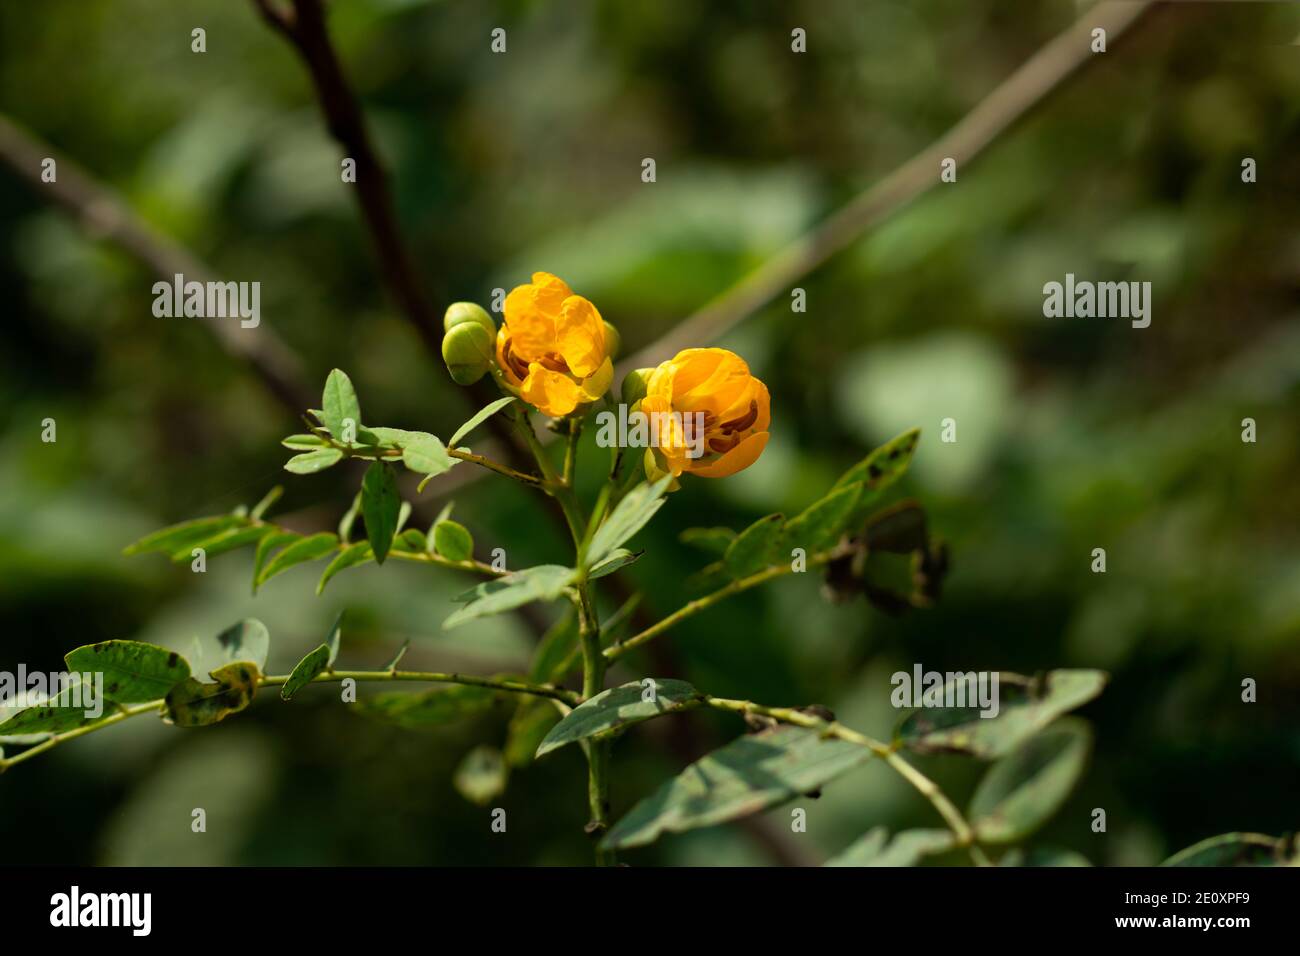 Senna corymbosa or Argentine senna yellow flower and family of Leguminosae Stock Photo